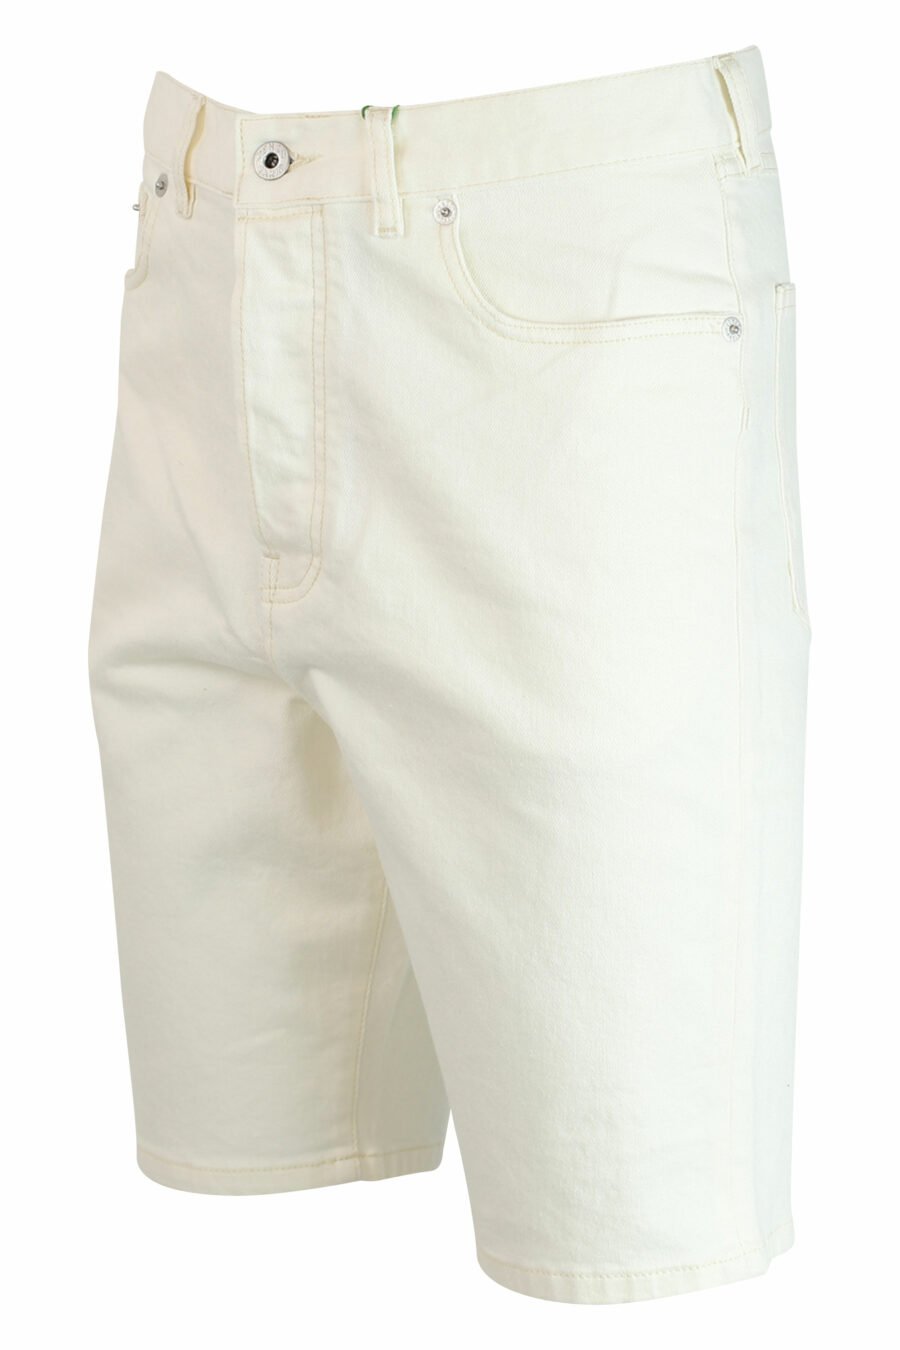 Pantalón vaquero blanco corto con minilogo - 3612230414884 2